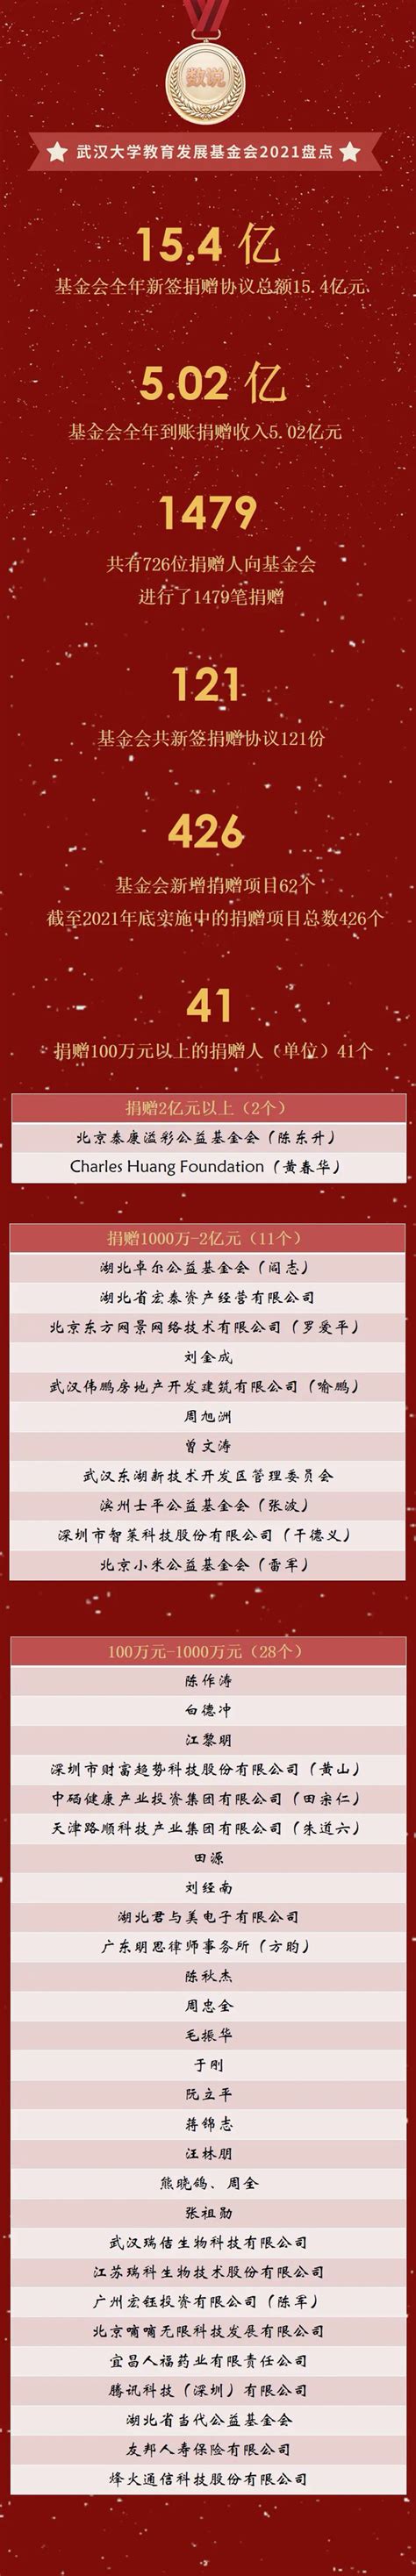 2019中国大学校友捐赠排名，武大第4，第一名捐款高达31亿